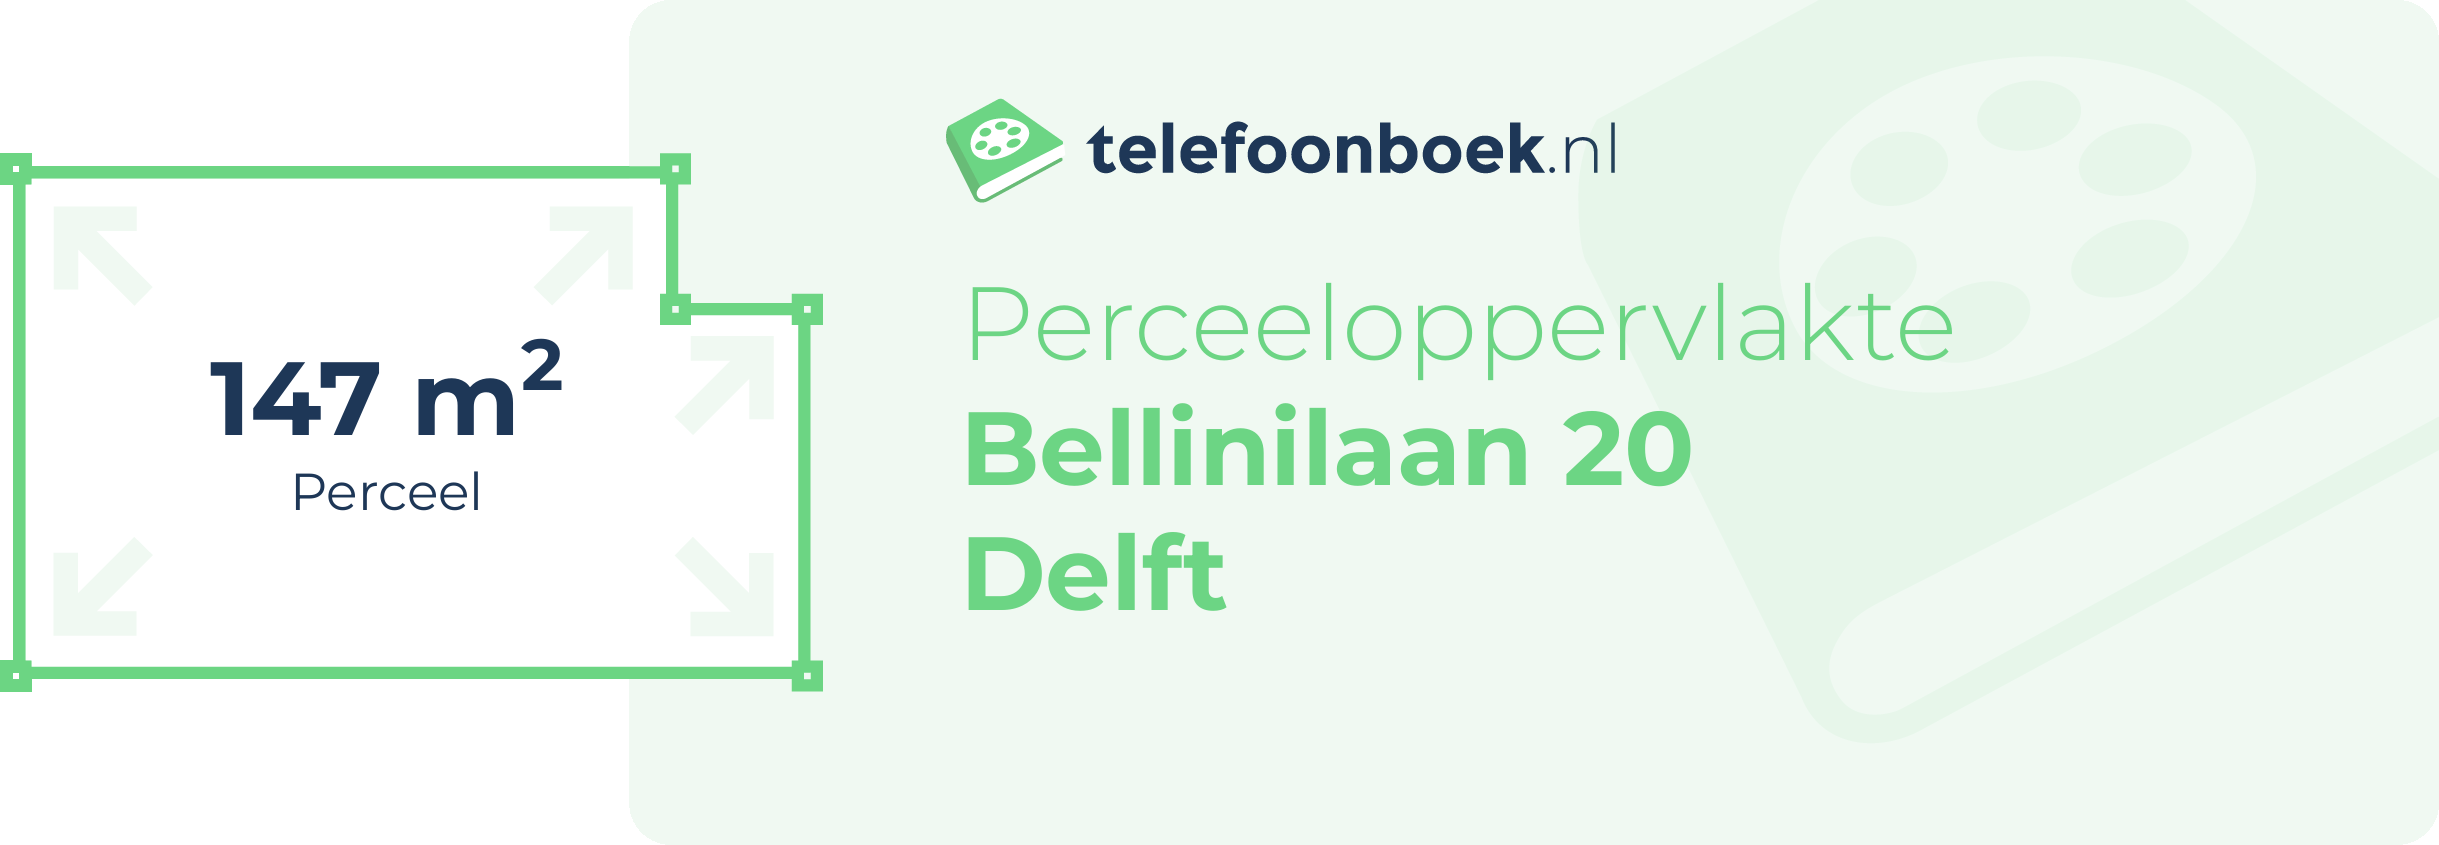 Perceeloppervlakte Bellinilaan 20 Delft